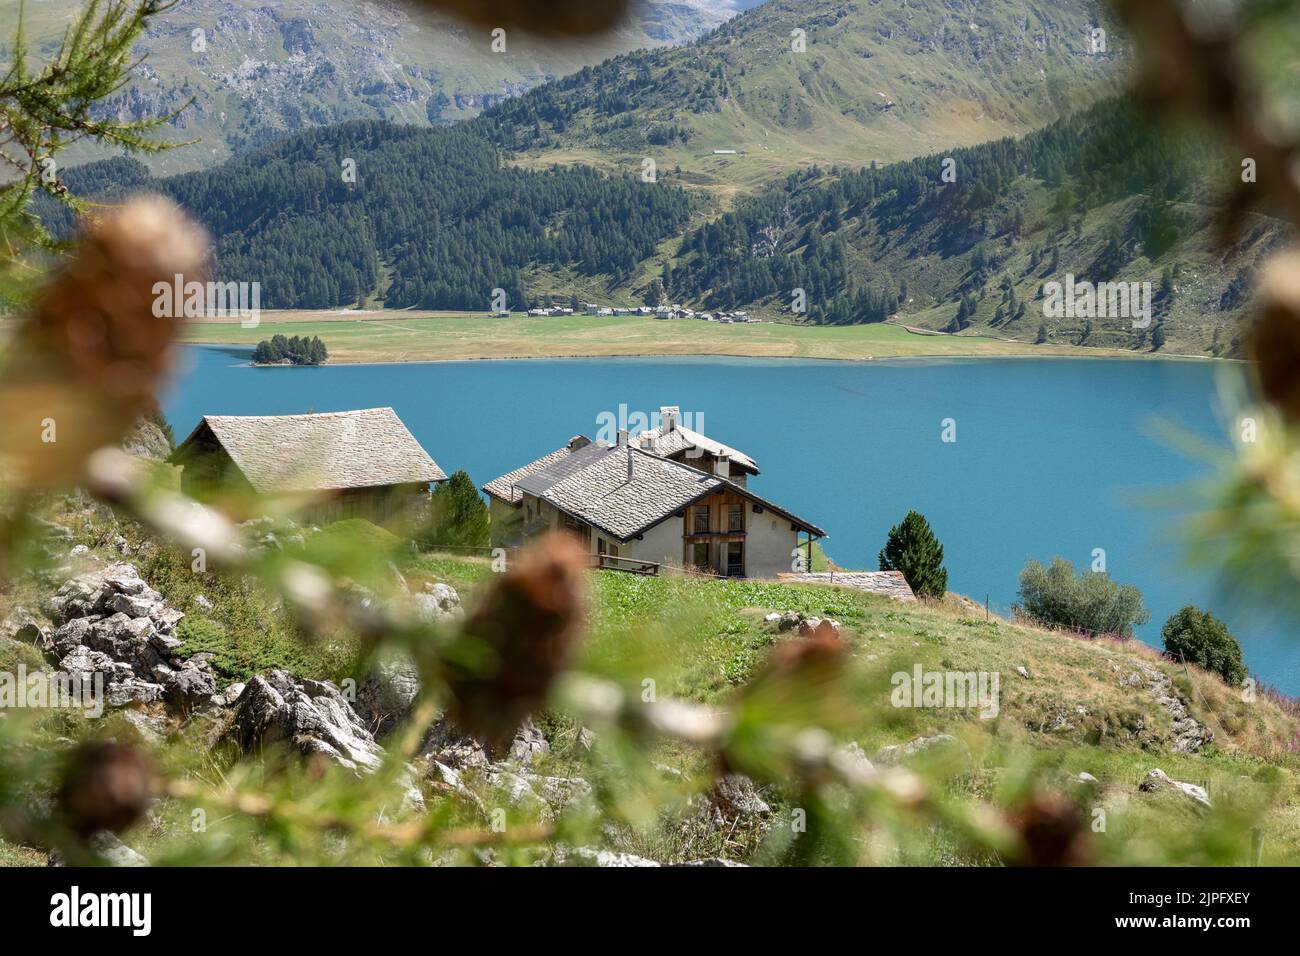 Reisen in der schweiz, Landschaften mit felsigen Bergen, azurblauen Seen und atemberaubenden Pinienwäldern, Weiden mit Seele Stockfoto